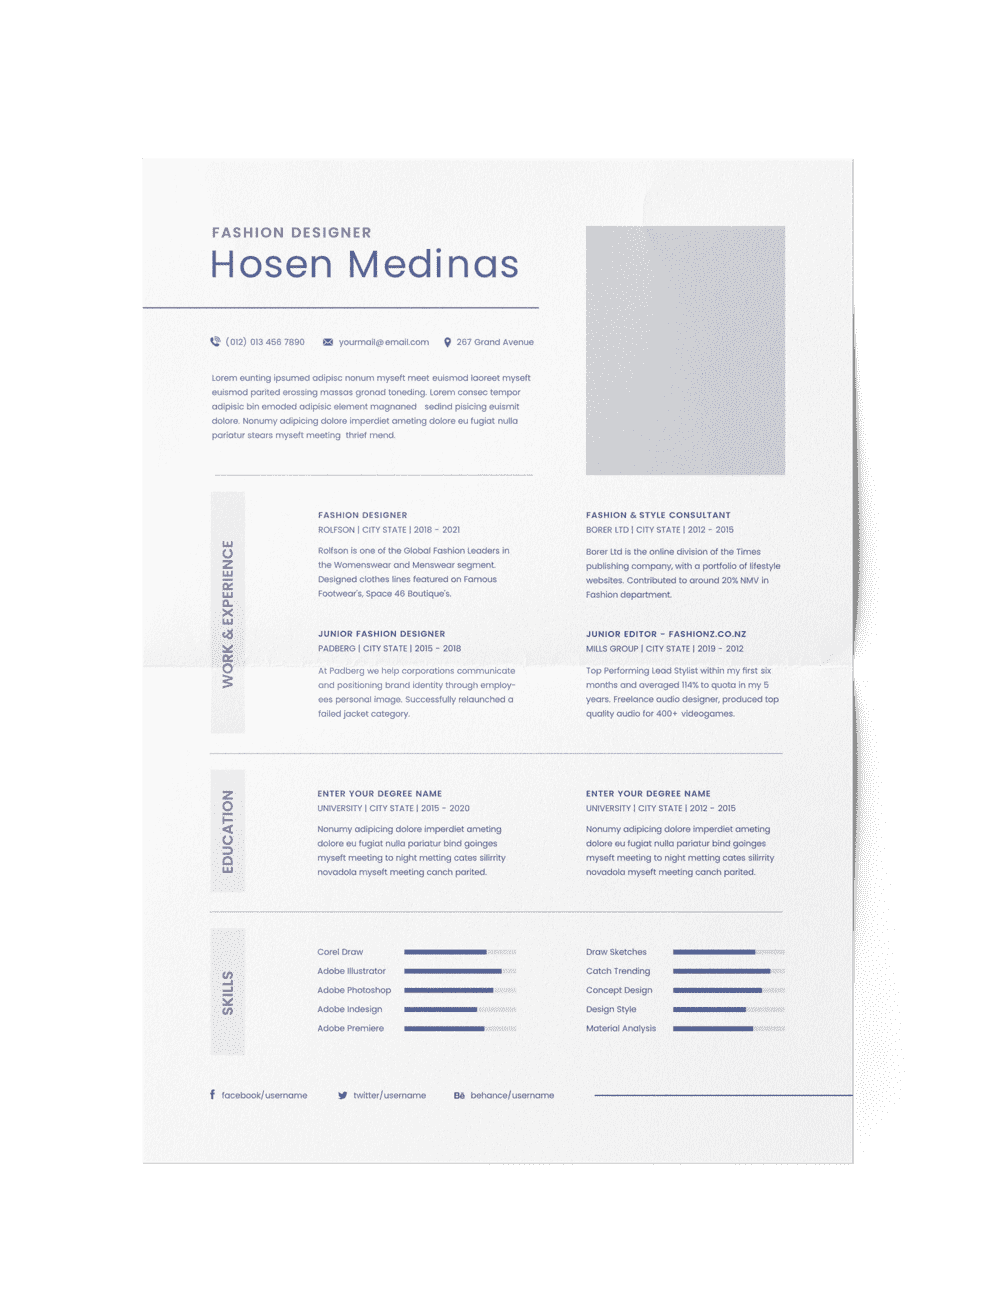 CV #16 Hosen Medinas